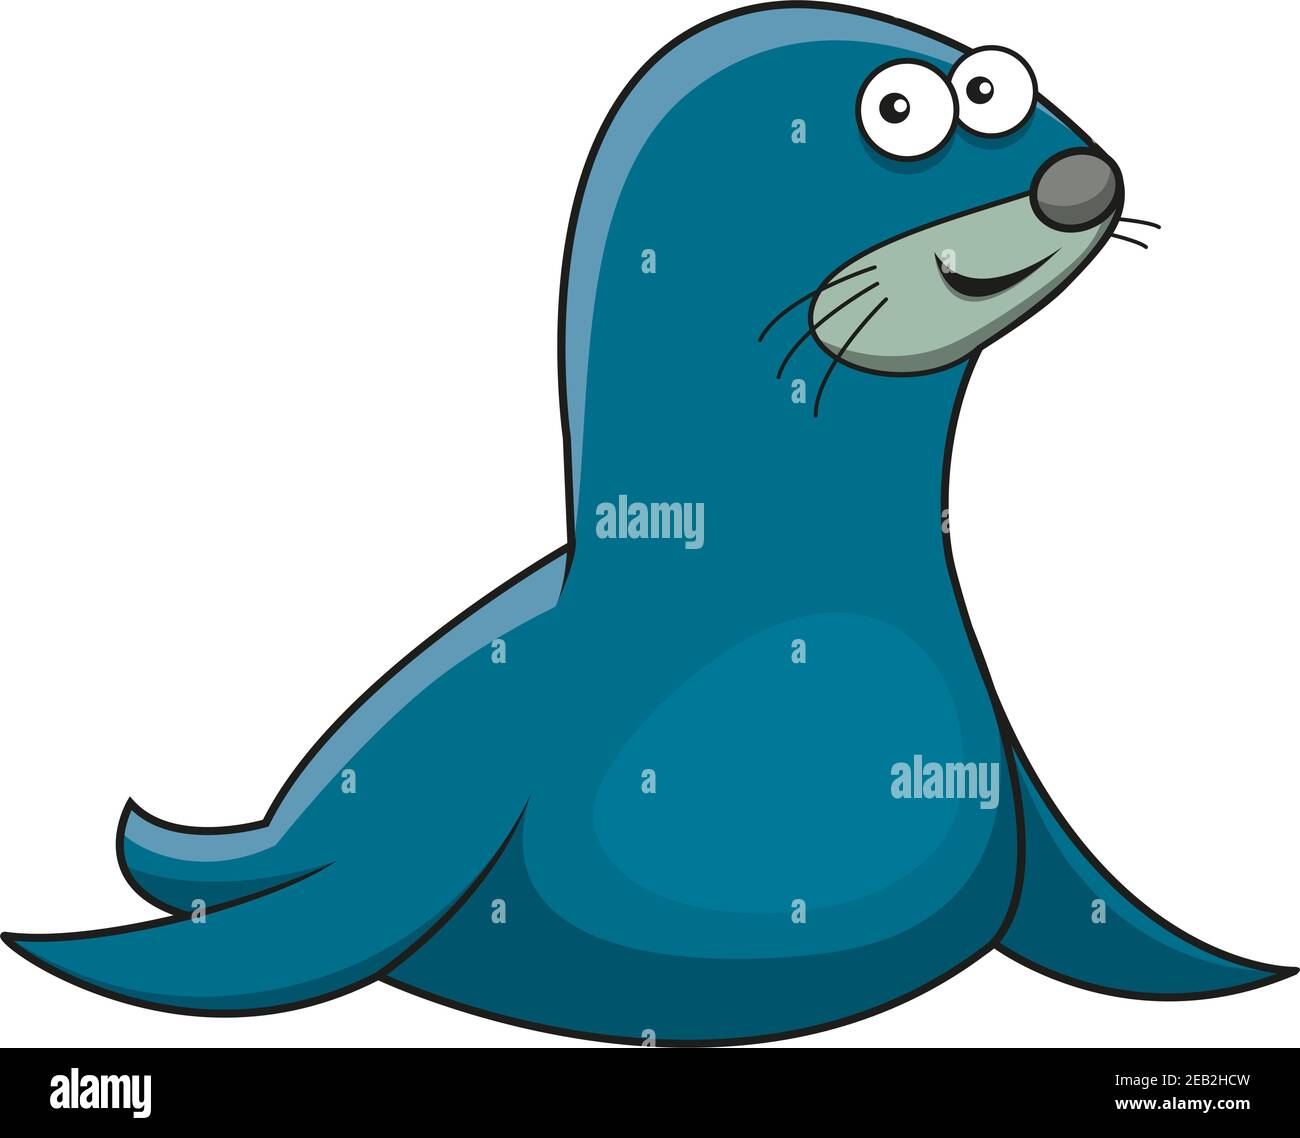 Verspielte Cartoon Meerpelz Seehund Charakter mit blauem dickem Fell und langen Vorderlippern, für Natur oder Maskottchen-Design Stock Vektor